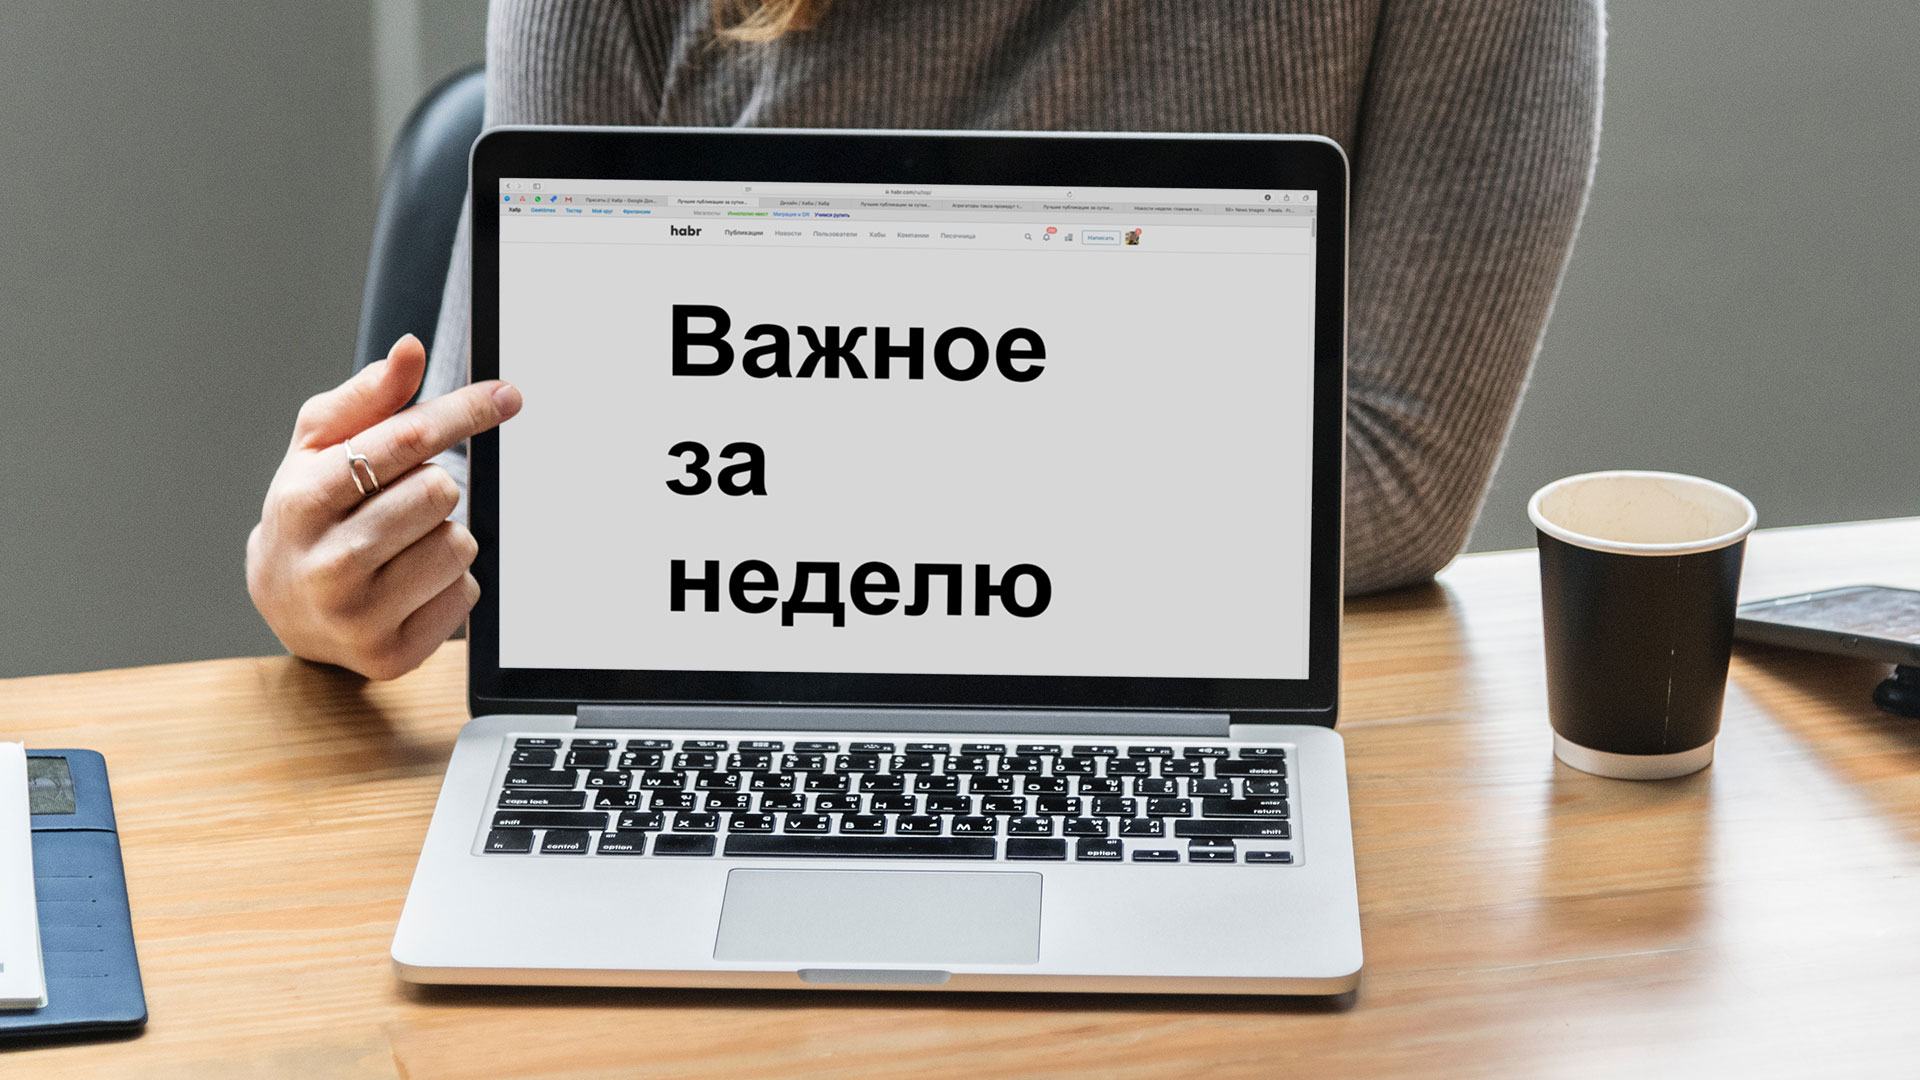 Новости недели: «Яндекс» и западные спецслужбы, ФАС борется с онлайн-казино, Минтранс регулирует работу BlaBlaCar - 1